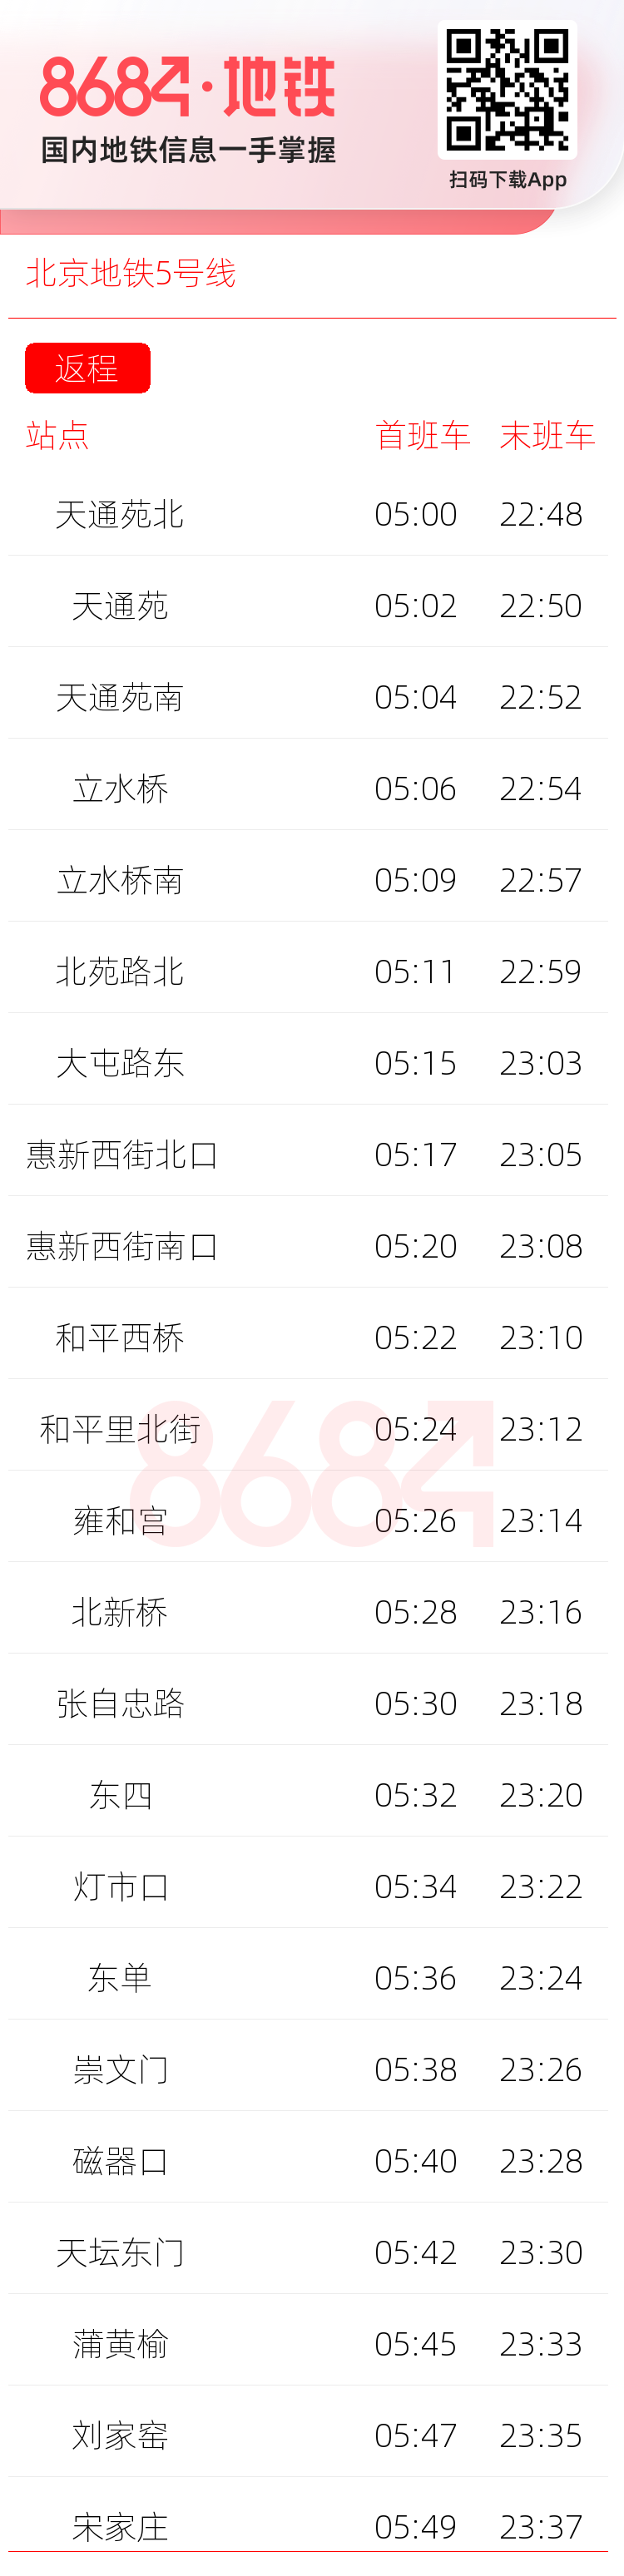 北京地铁5号线运营时间表